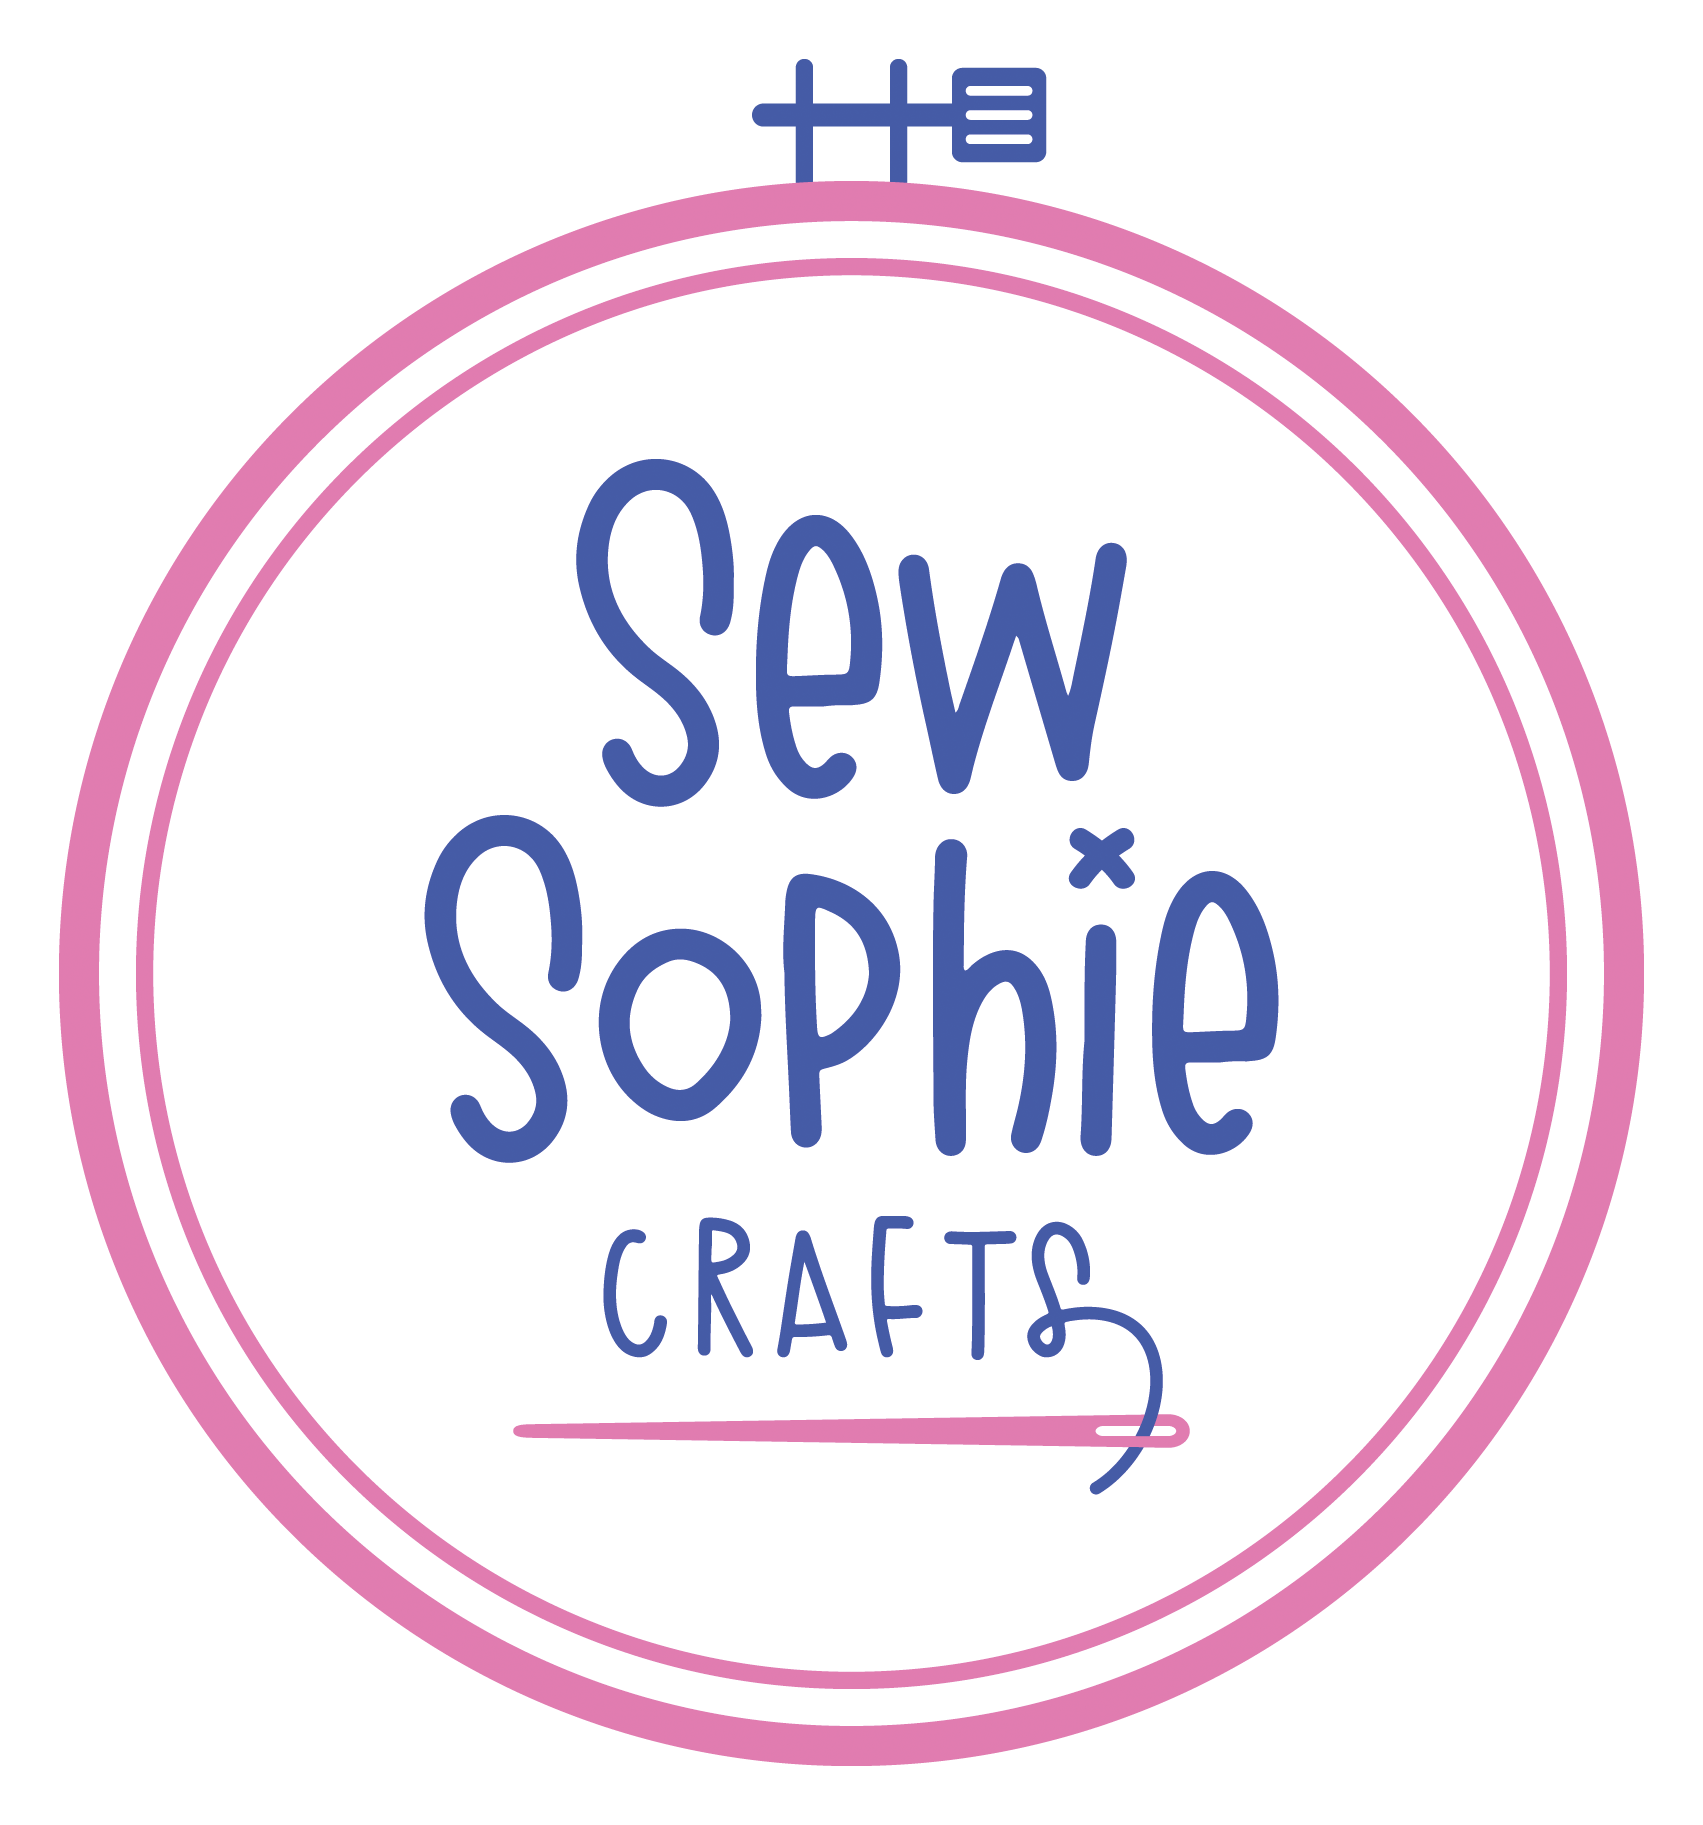 Sew Sophie Crafts